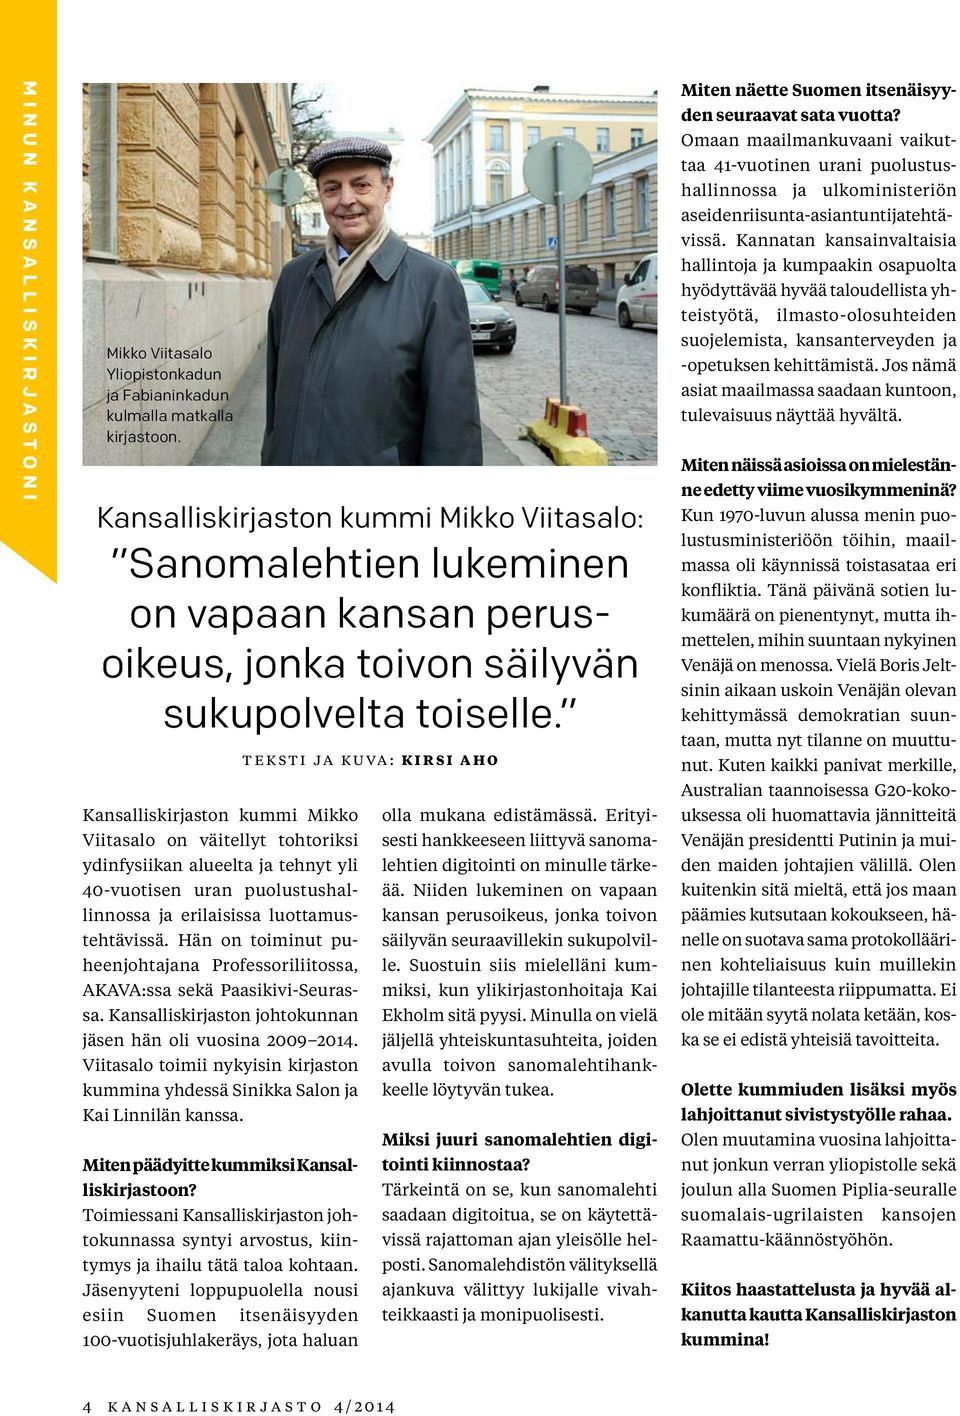 Kansalliskirjaston kummi Mikko Viitasalo on väitellyt tohtoriksi ydinfysiikan alueelta ja tehnyt yli 40-vuotisen uran puolustushallinnossa ja erilaisissa luottamustehtävissä.